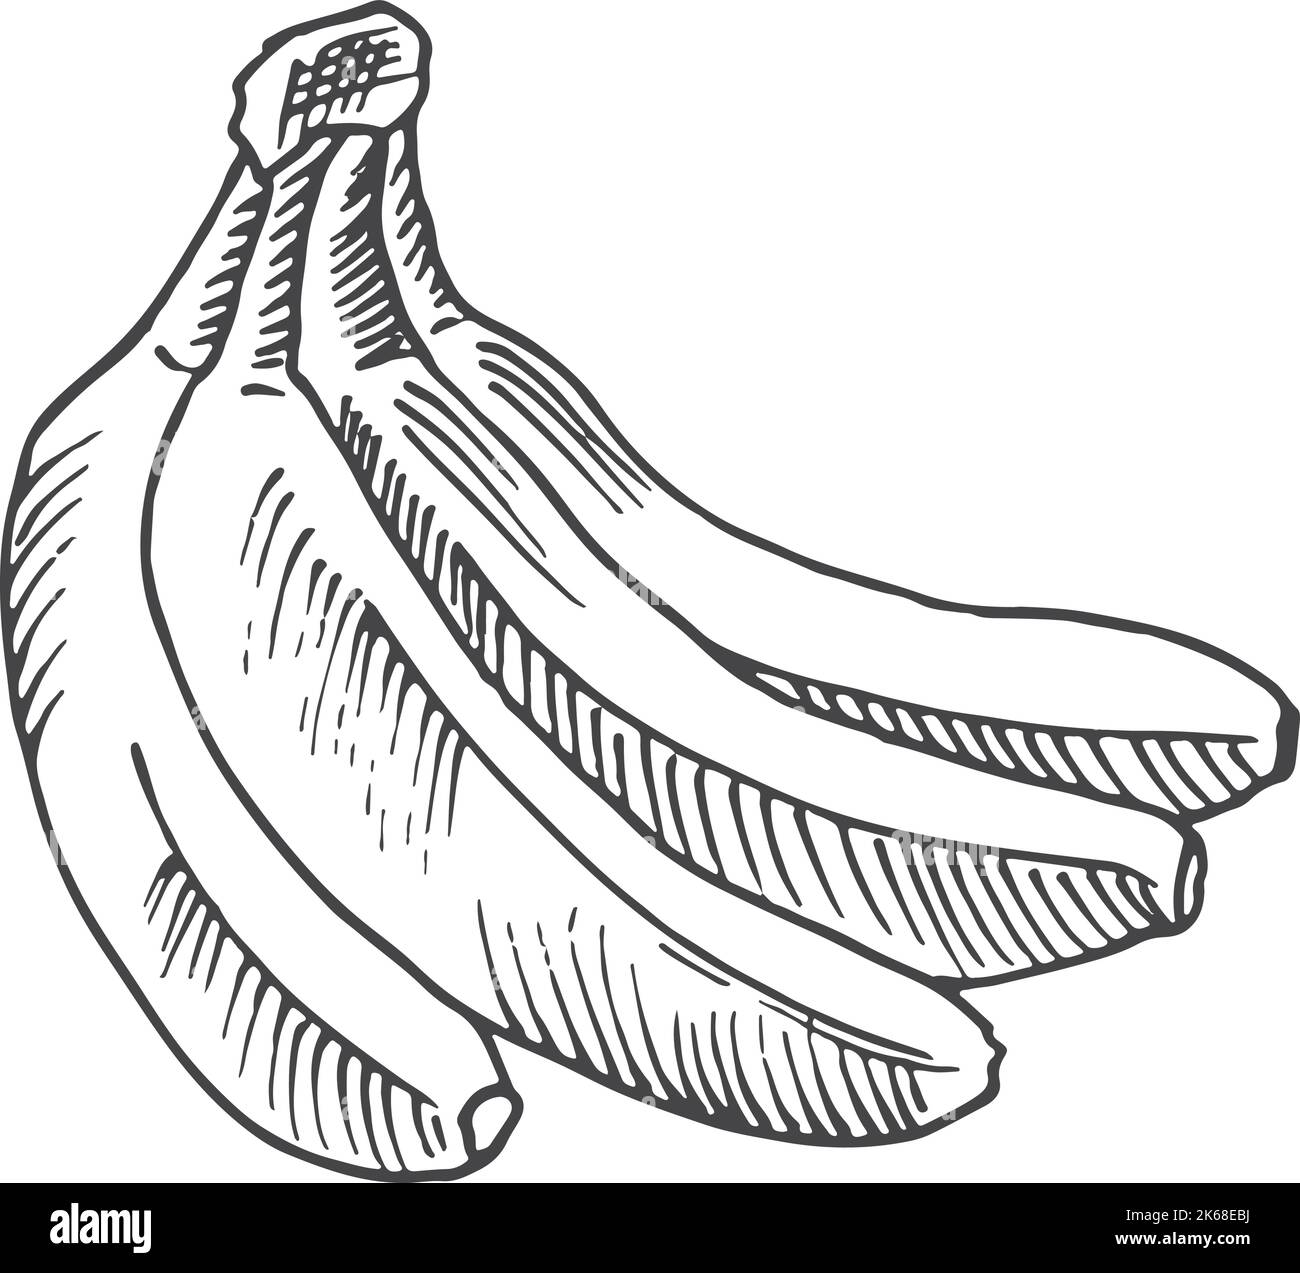 100,000 Banana sketch Vector Images | Depositphotos